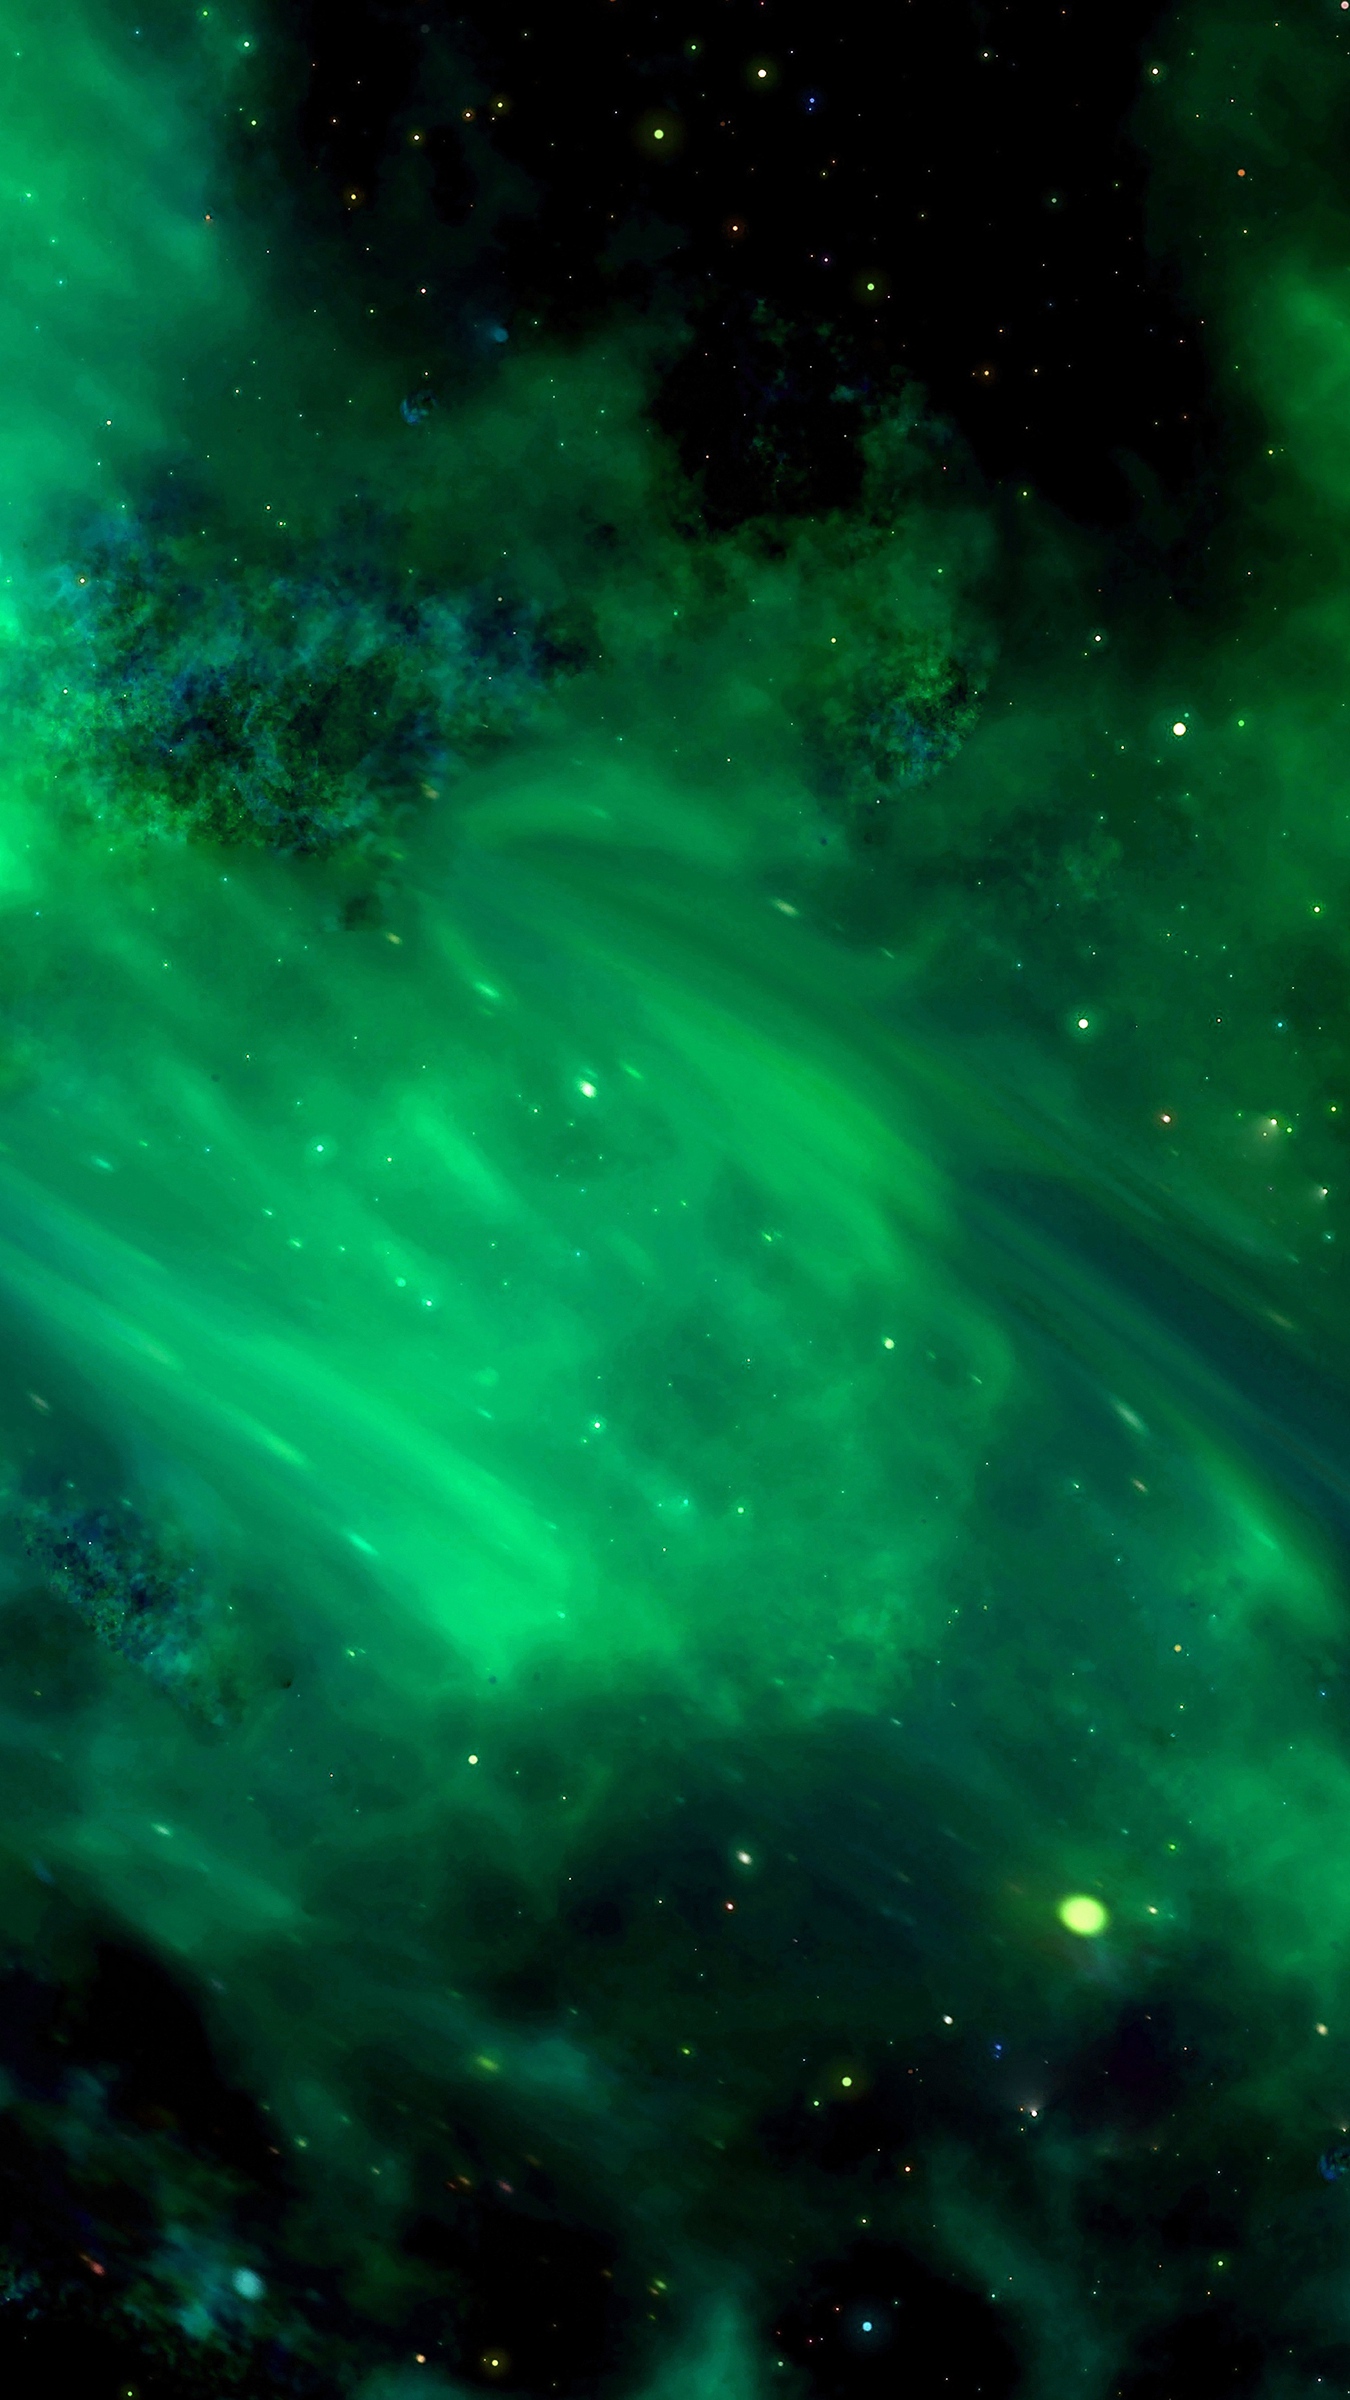 galaxy note 3 wallpaper hd 1080p,verde,natura,cielo,nebulosa,aurora